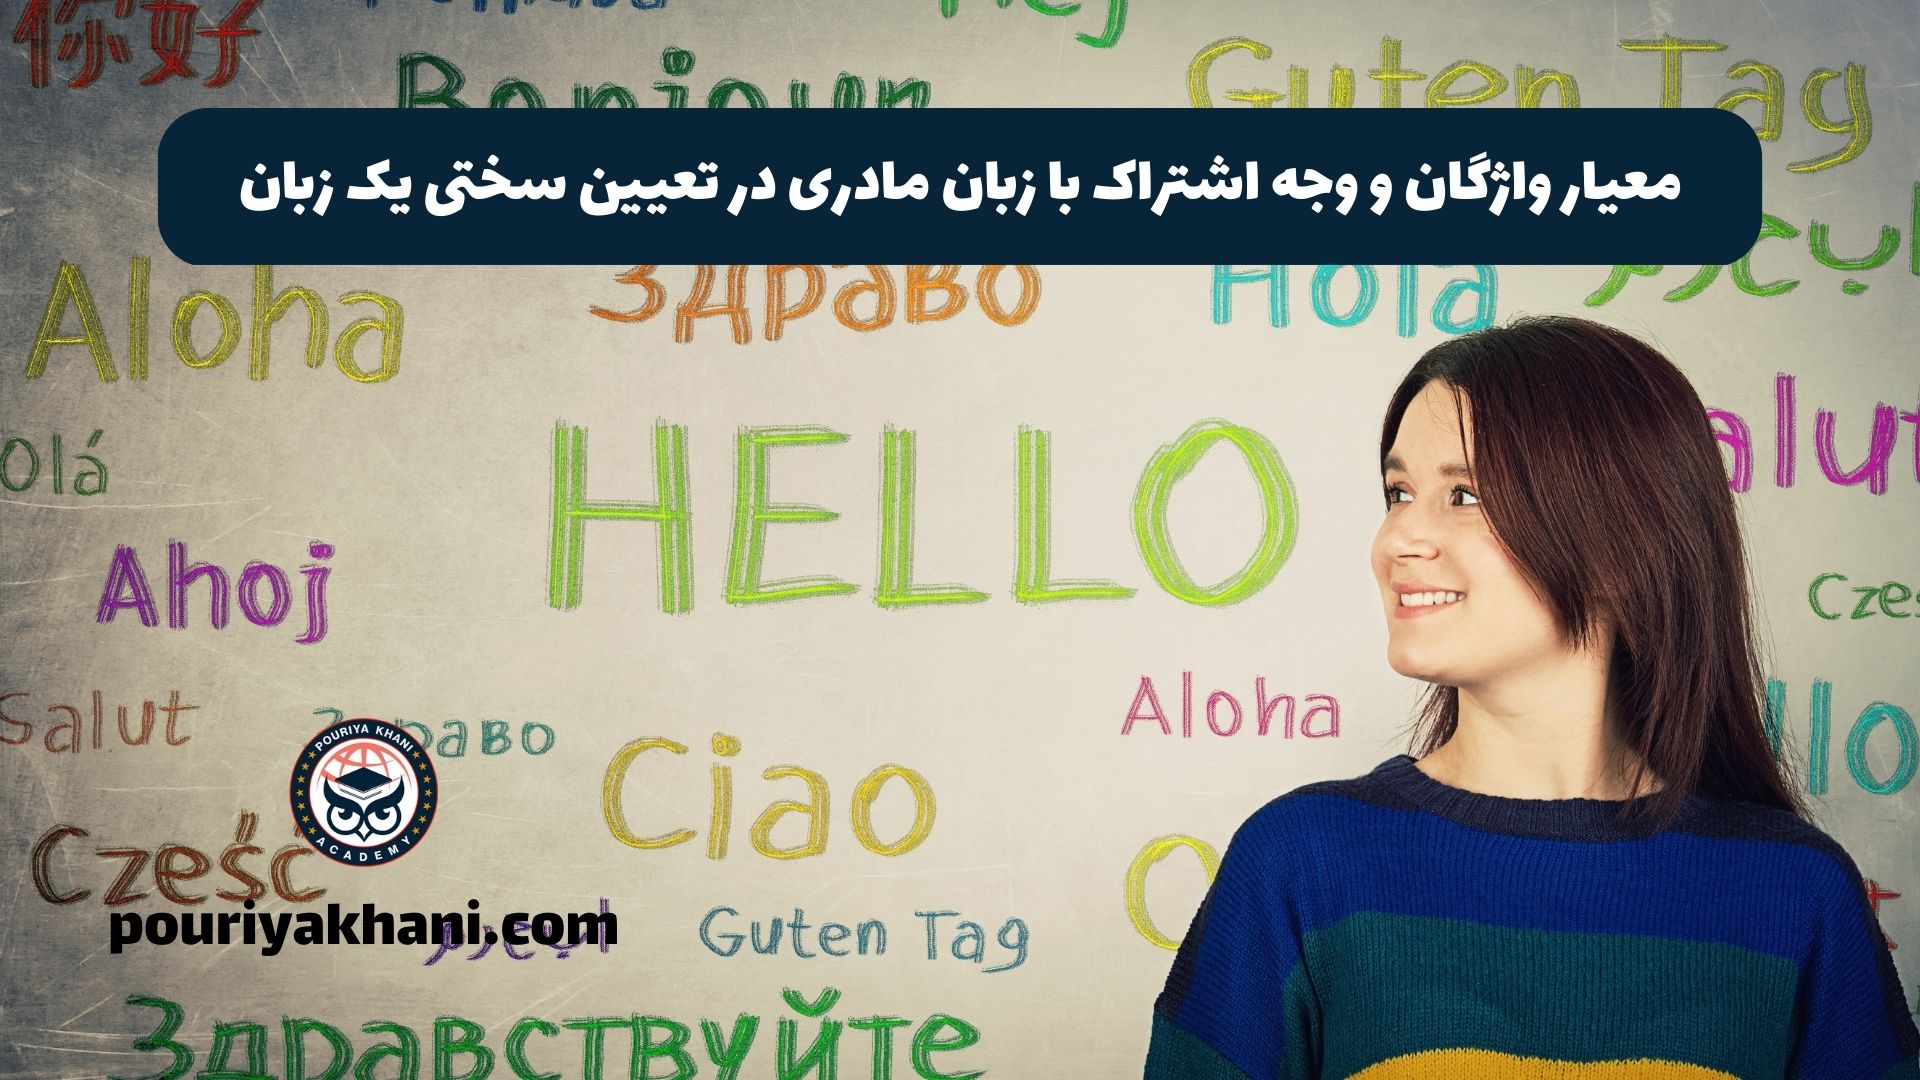 معیار واژگان و وجه اشتراک با زبان مادری در تعیین سختی یک زبان